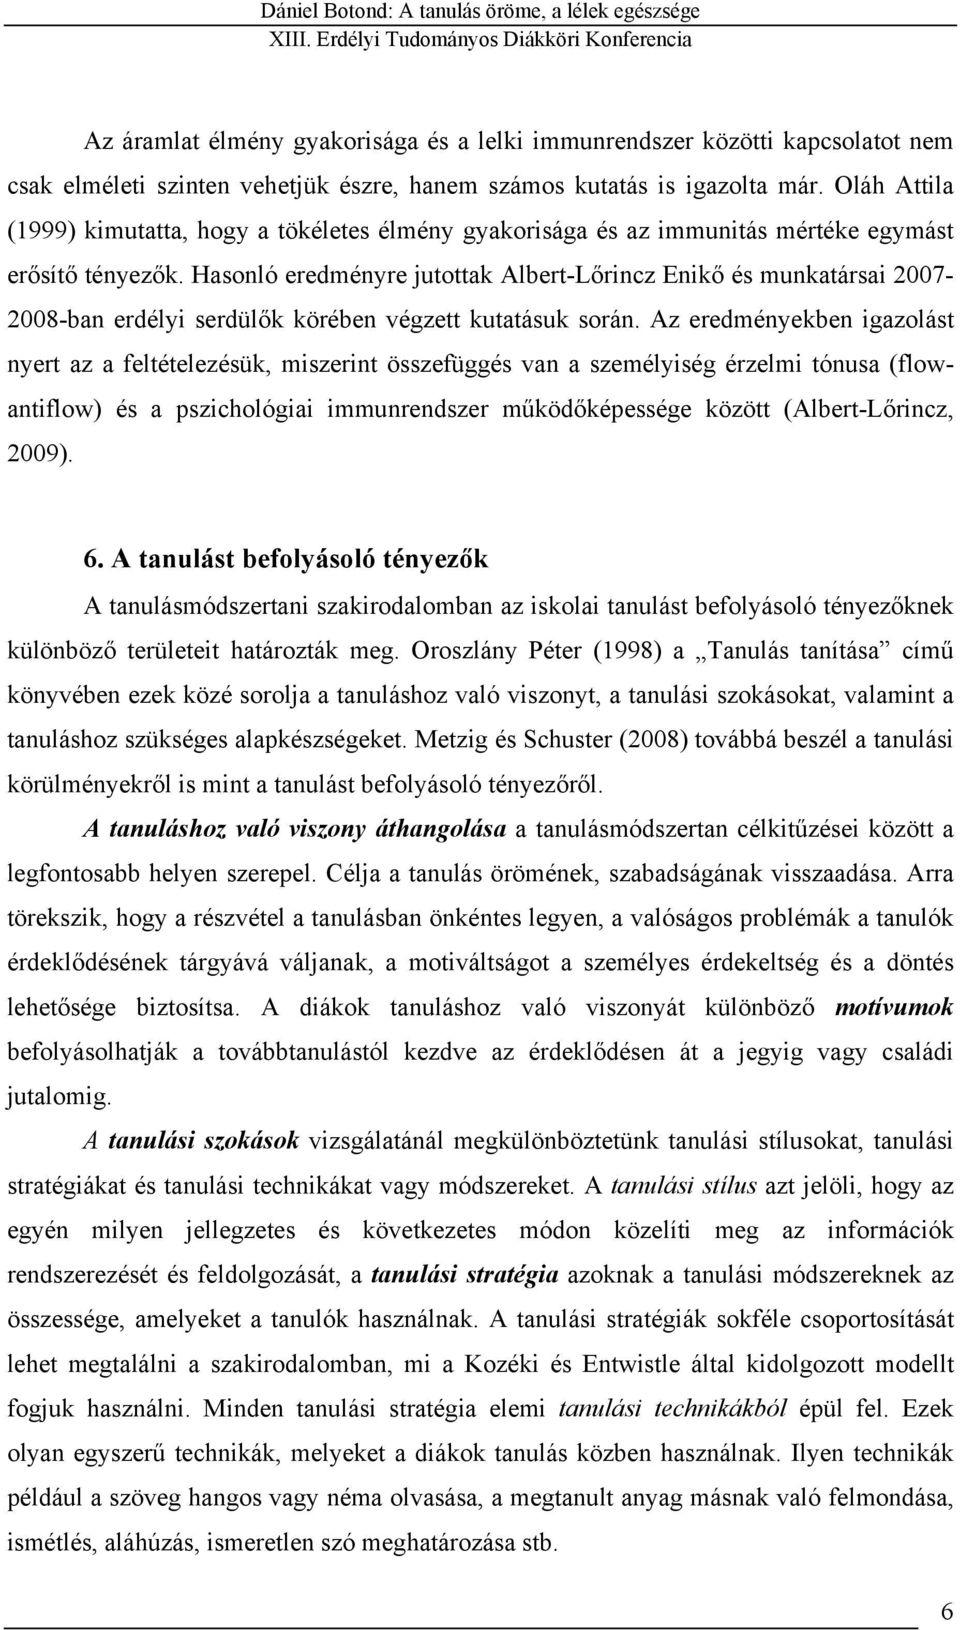 Hasonló eredményre jutottak Albert-Lőrincz Enikő és munkatársai 2007-2008-ban erdélyi serdülők körében végzett kutatásuk során.